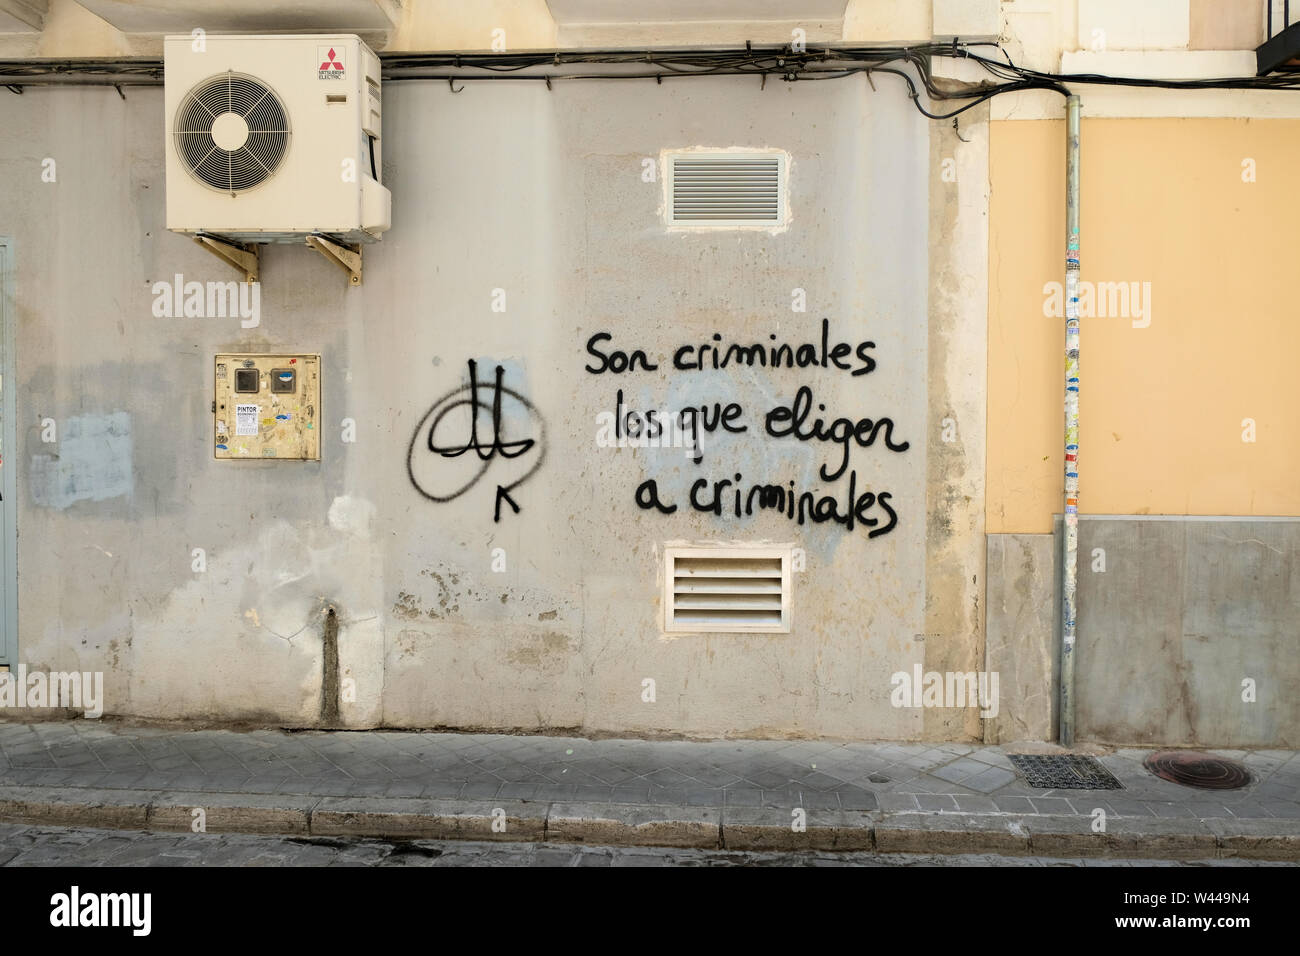 Son criminales los que eligen a criminales: anti-democracy political graffiti accusing voters of electing criminals; corrupt electorate Granada, Spain Stock Photo